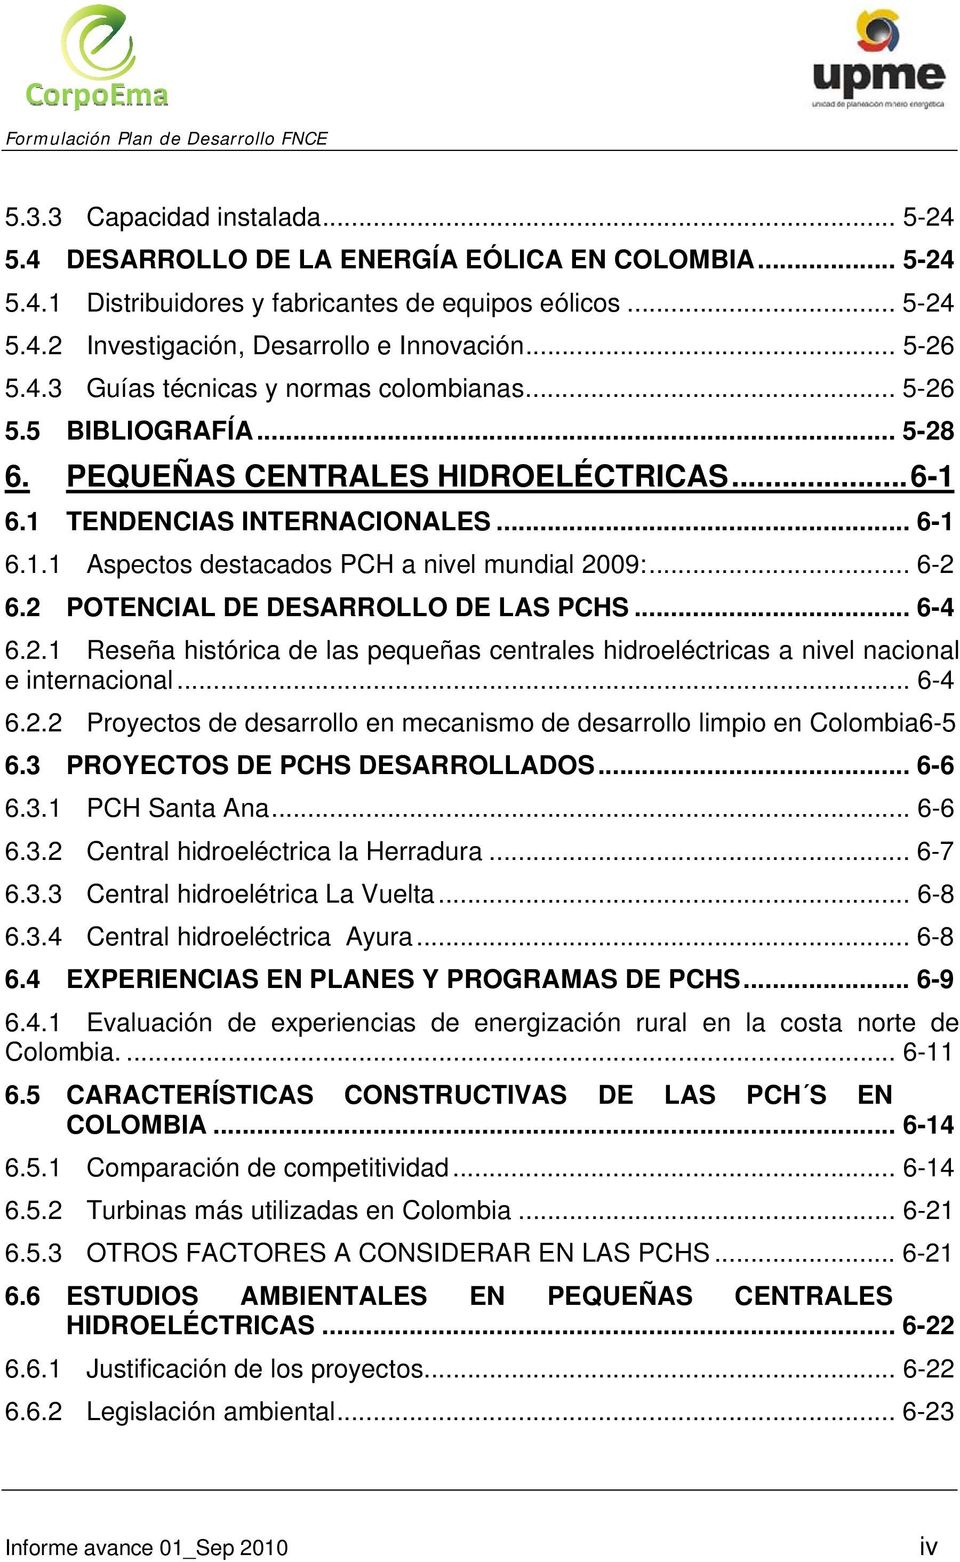 .. 6-2 6.2 POTENCIAL DE DESARROLLO DE LAS PCHS... 6-4 6.2.1 Reseña histórica de las pequeñas centrales hidroeléctricas a nivel nacional e internacional... 6-4 6.2.2 Proyectos de desarrollo en mecanismo de desarrollo limpio en Colombia6-5 6.